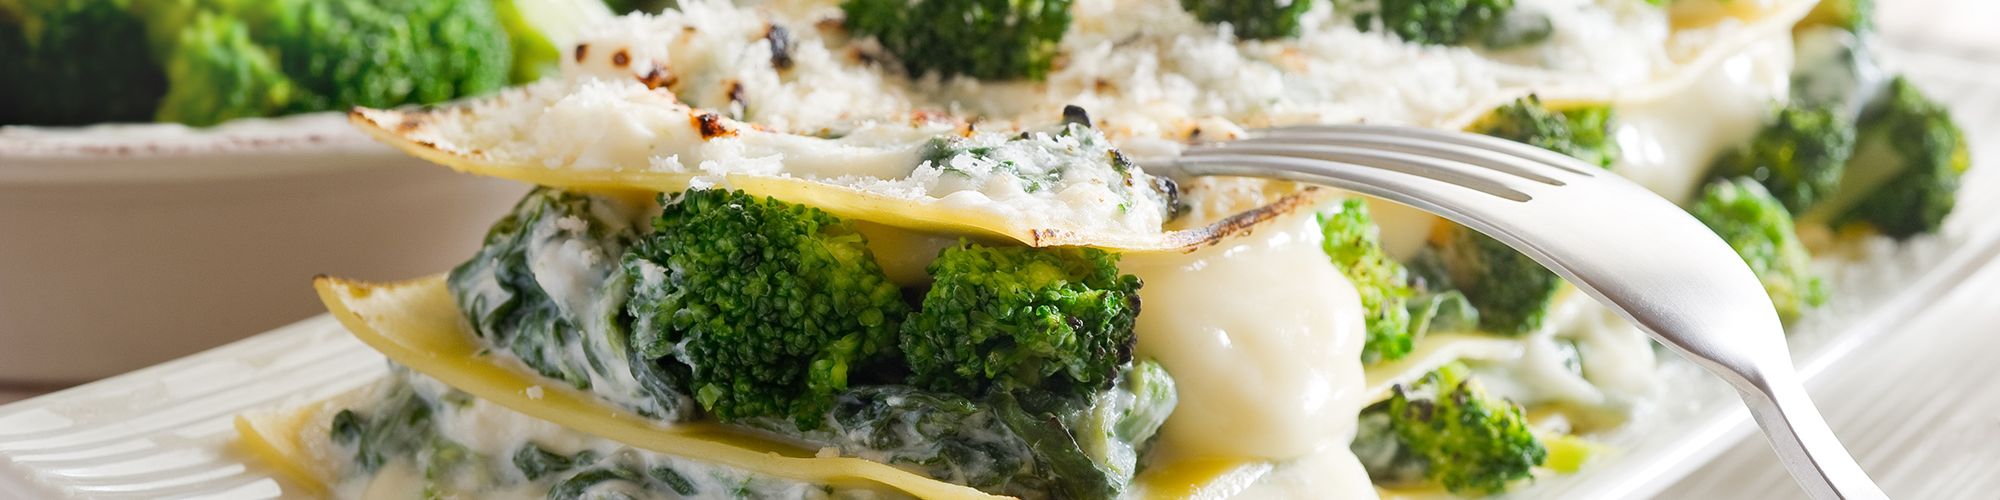 ricetta Lasagne con broccoli e prosciutto cotto con pasta fresca